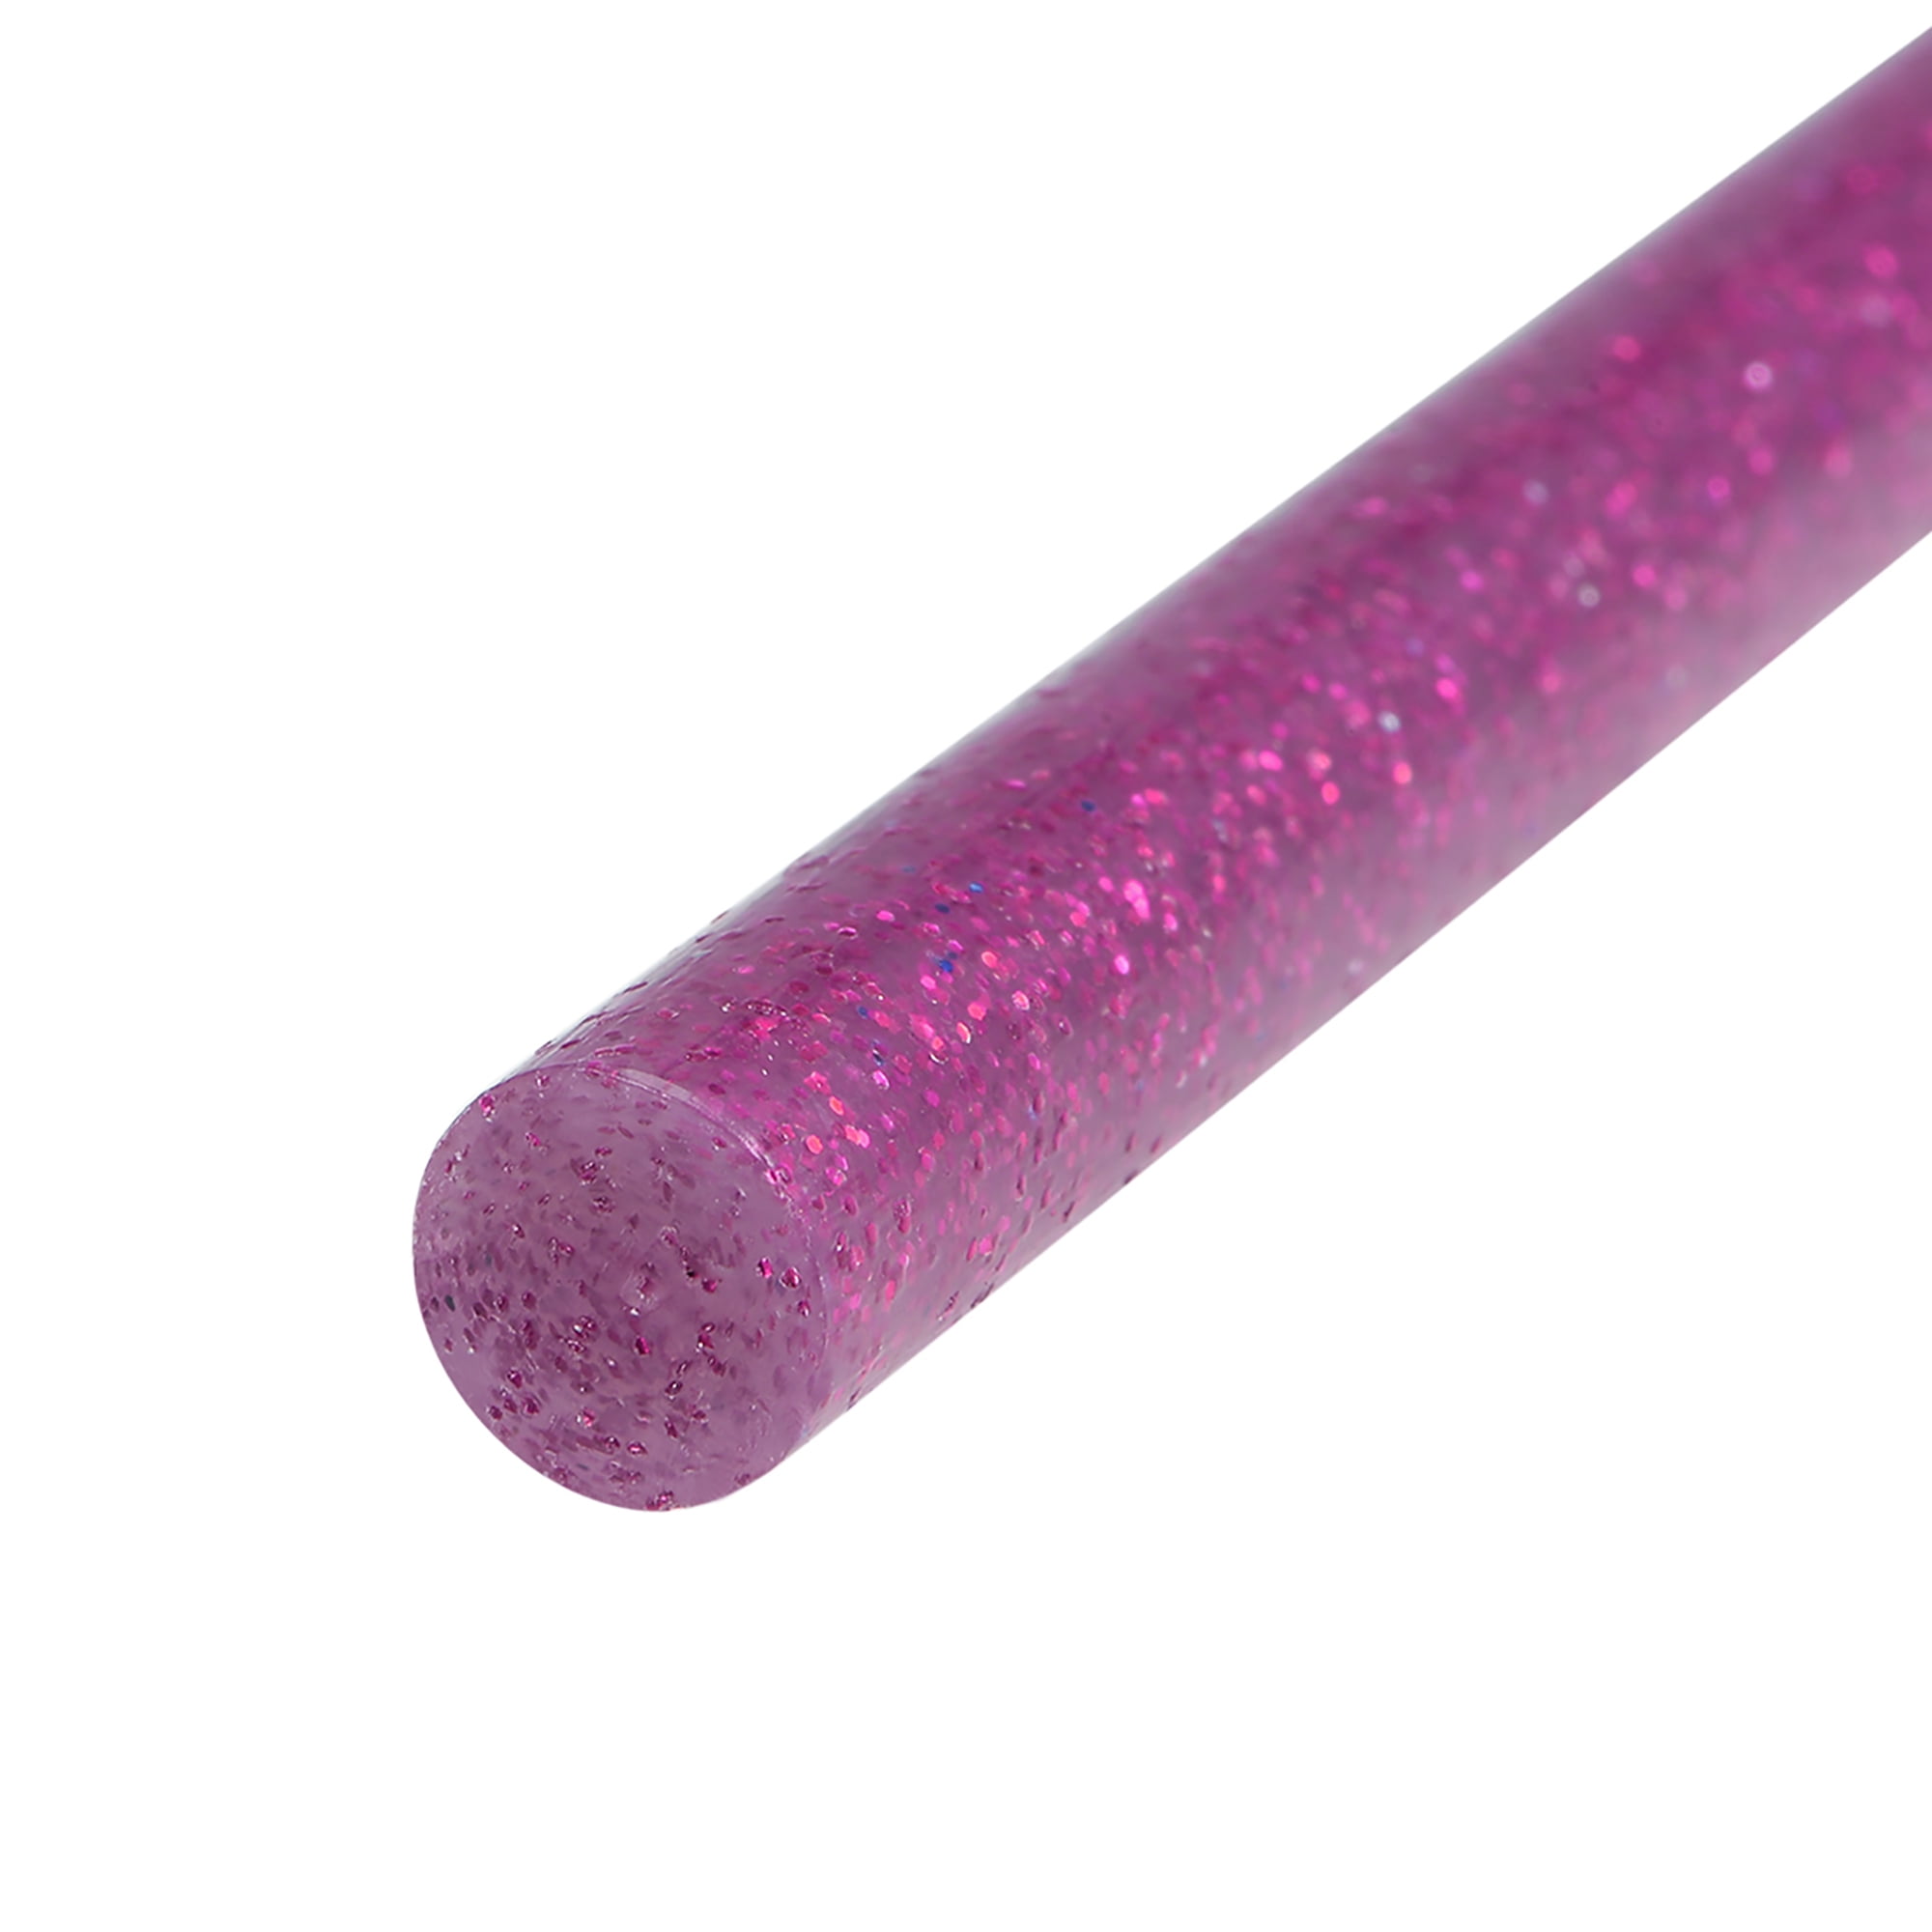  uxcell Mini Hot Glue Sticks for Glue Gun 0.27-inch x 4-inch  Champagne Glitter 10pcs : Arts, Crafts & Sewing